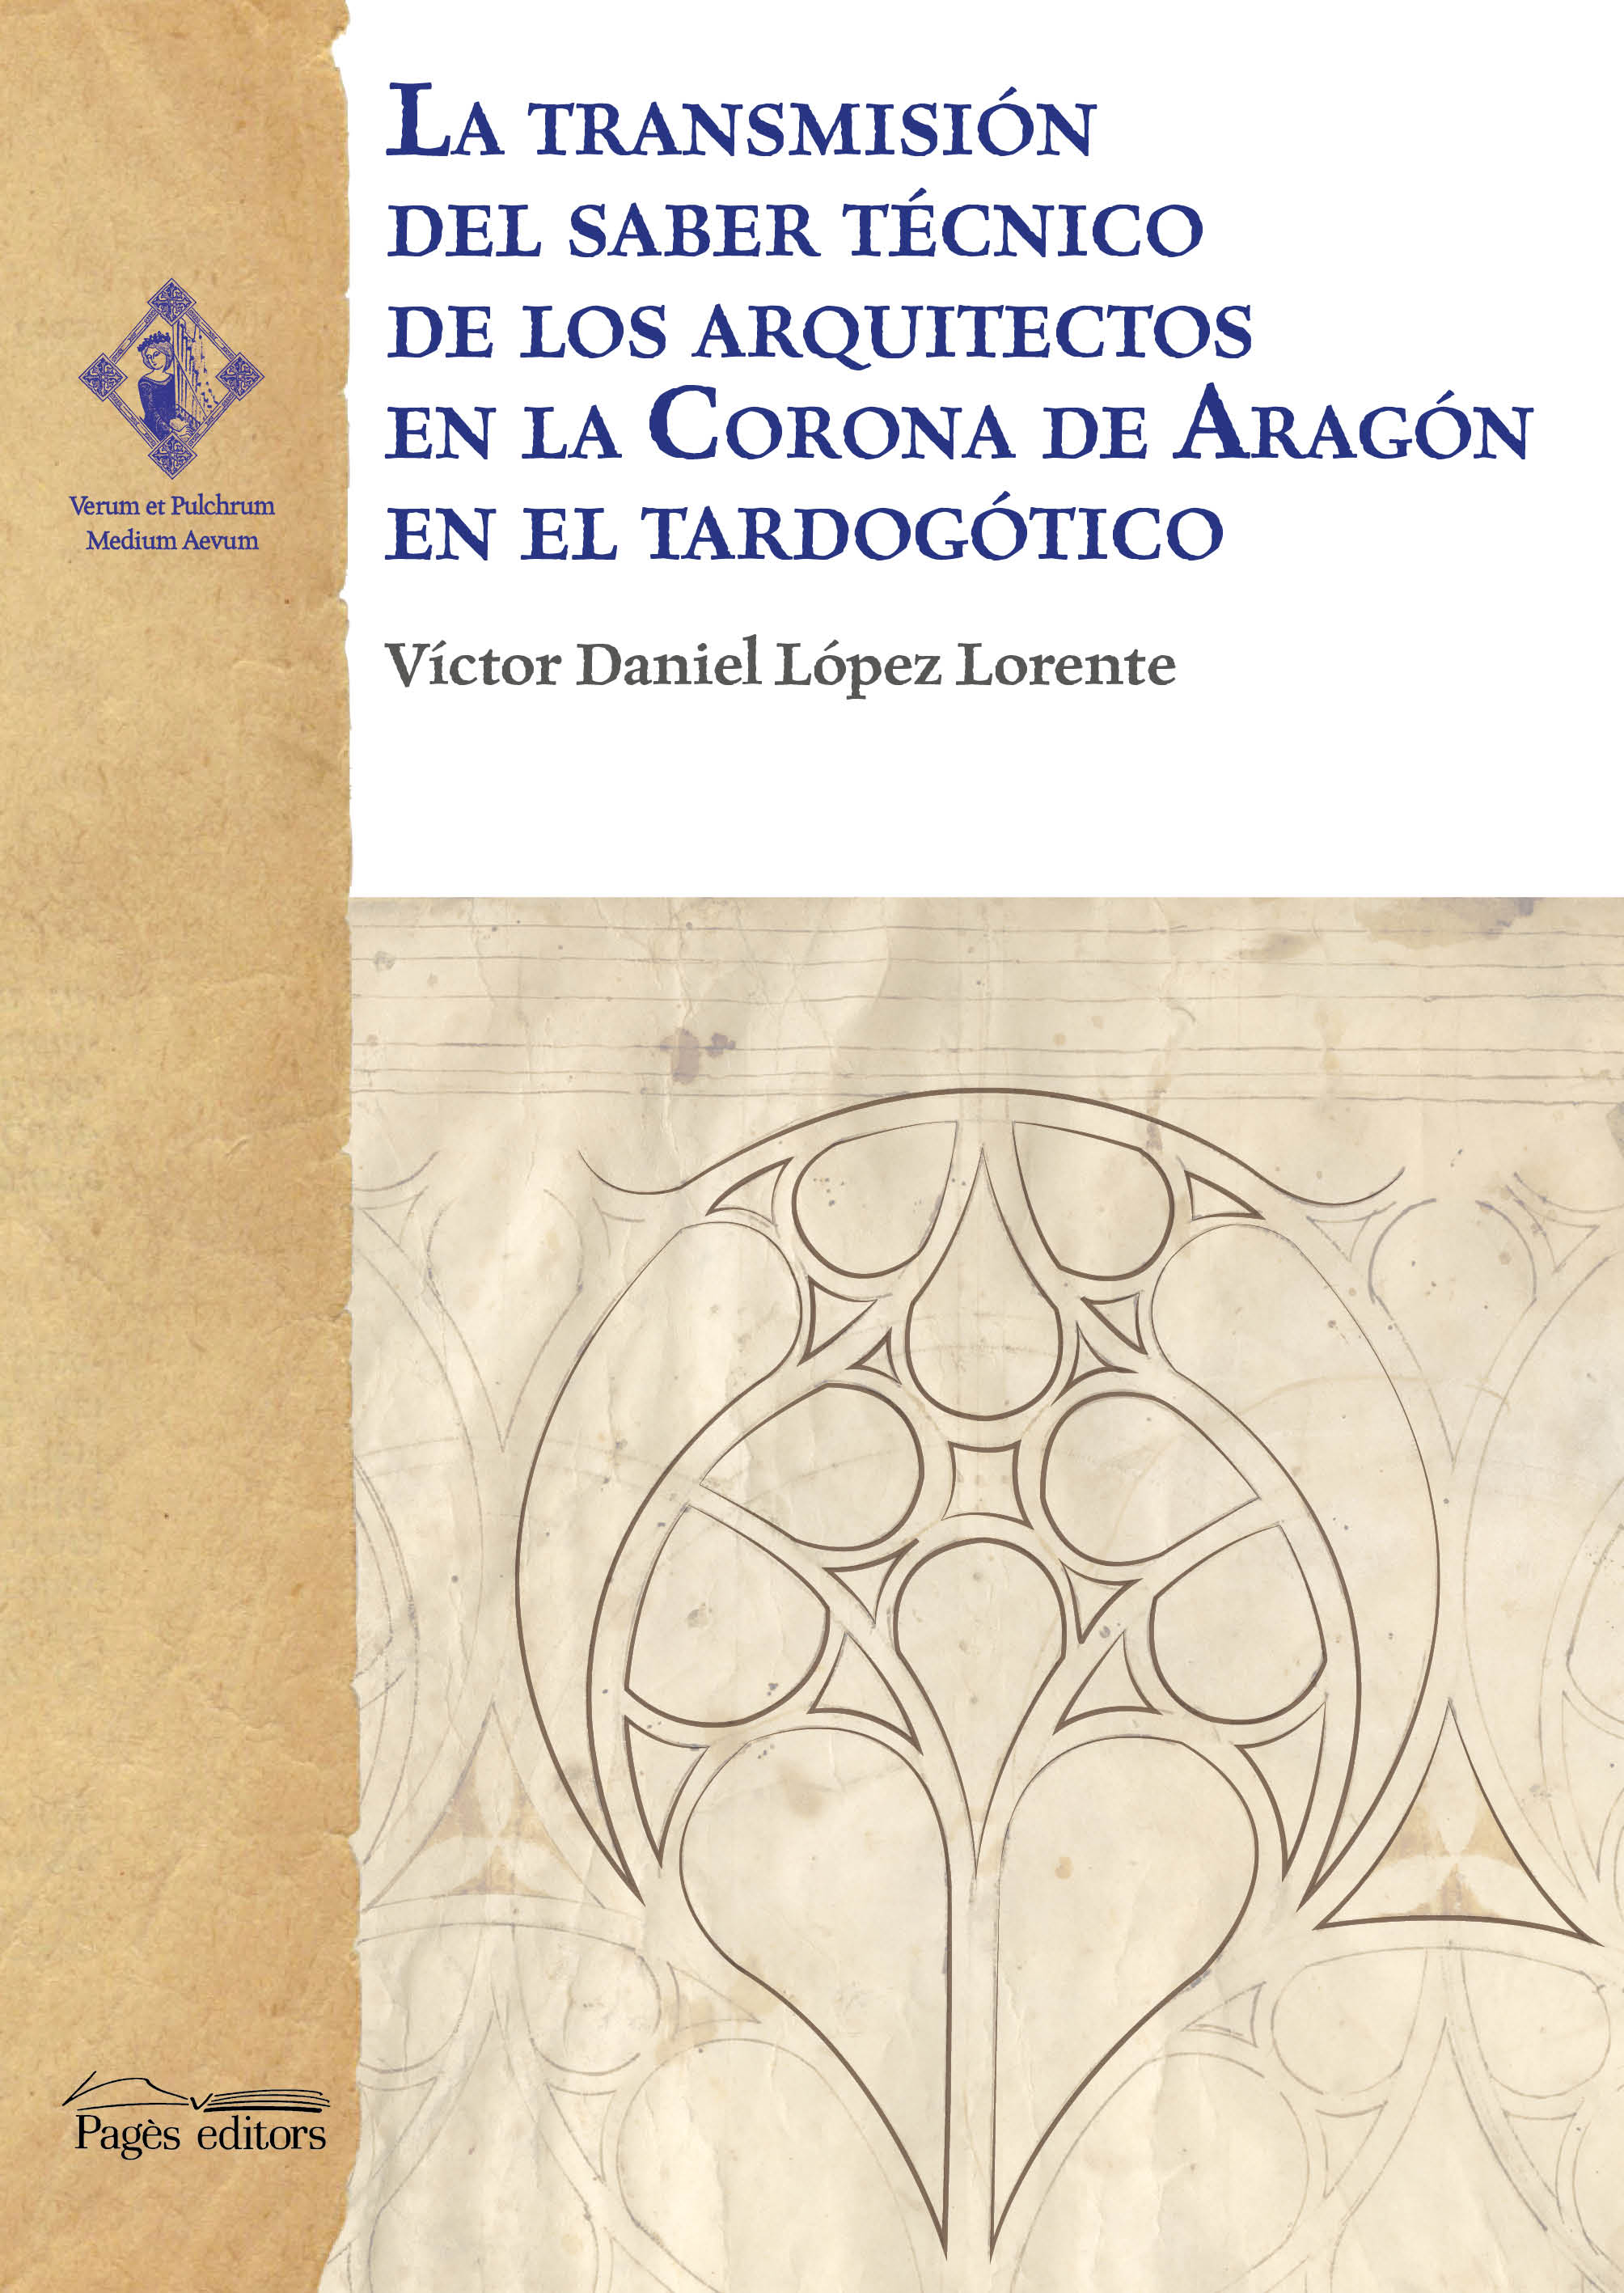 La transmisión del saber técnico de los arquitectos en la Corona de Aragón en el tardogótico